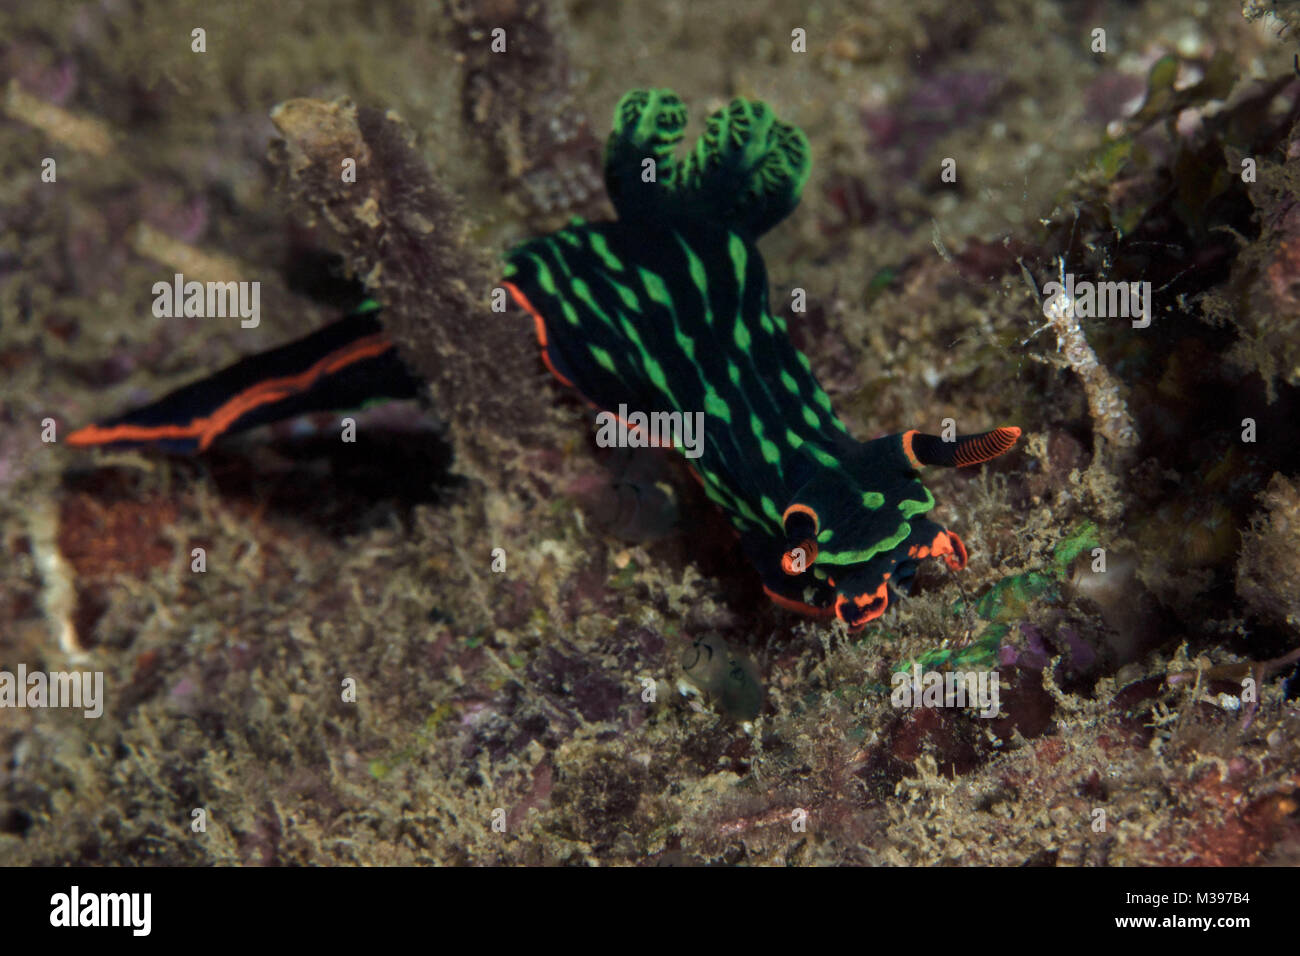 Nudibranch Nembrotha kubaryana. Puerto Galera, Philippines Stock Photo